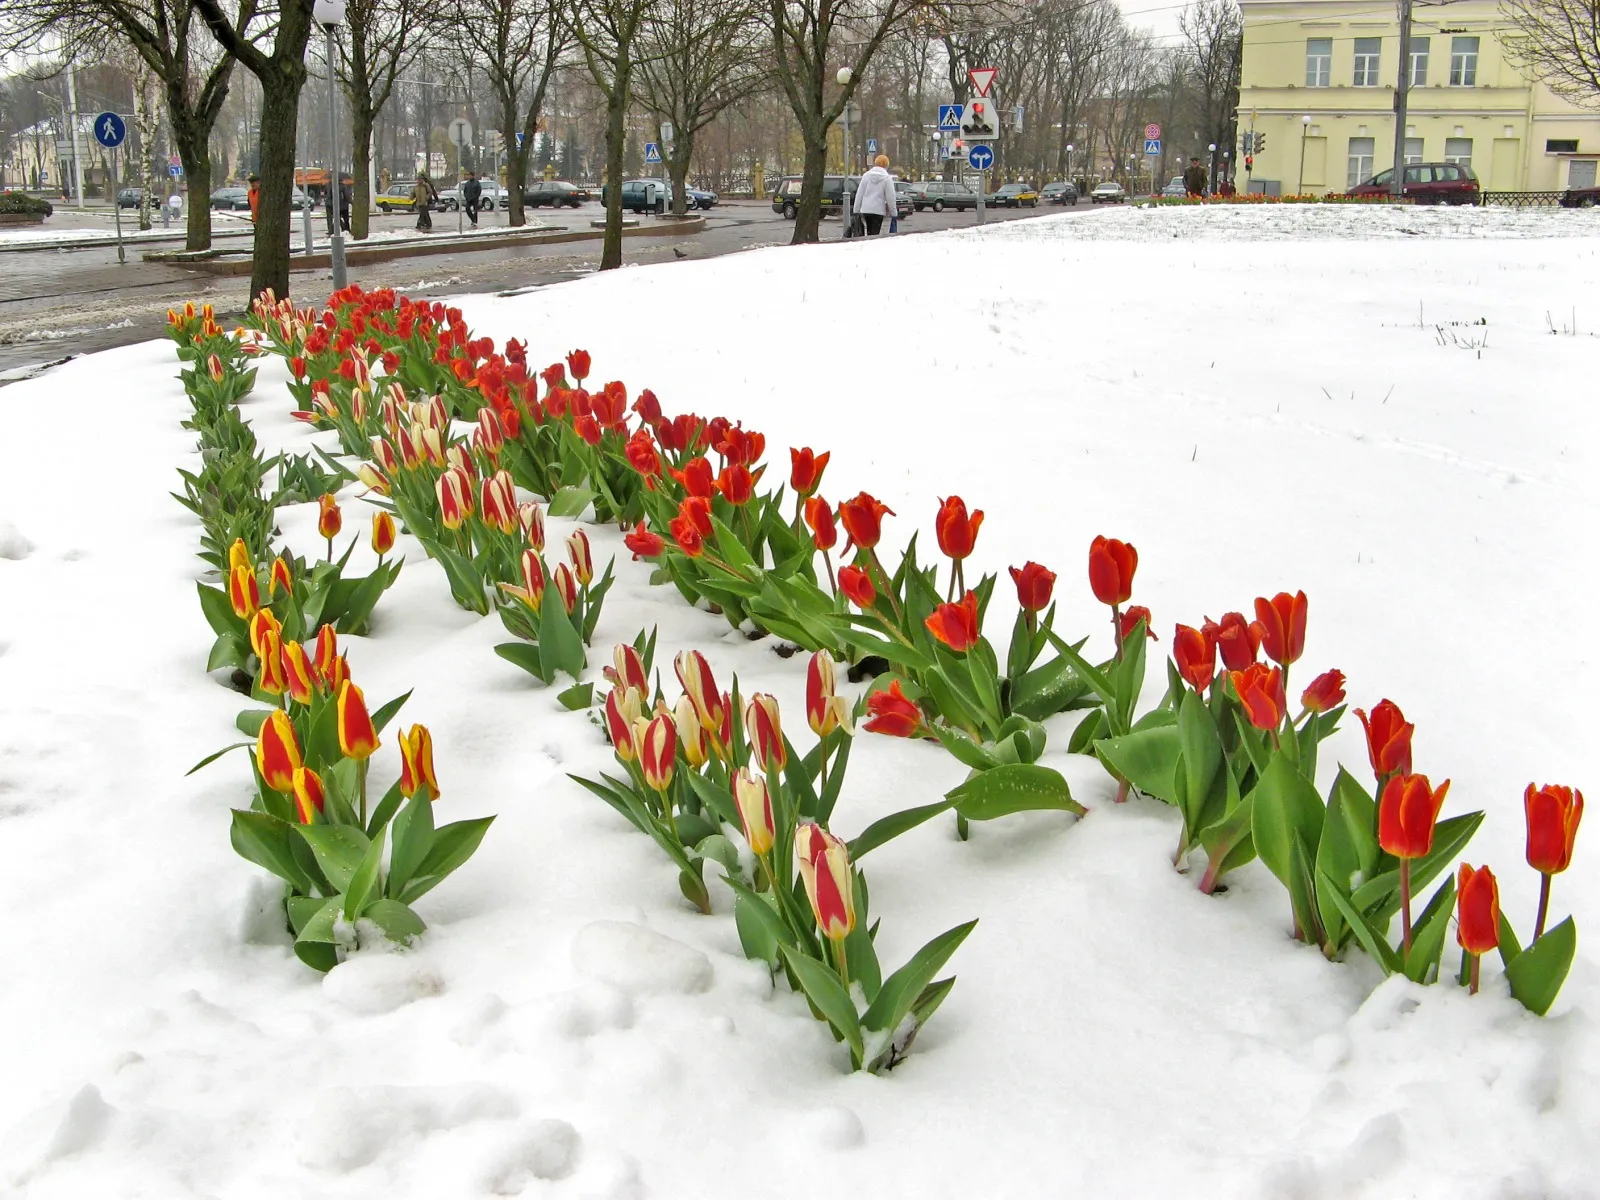 Фото с тюльпанами на улице. Тюльпаны в снегу. Тюльпаны весной. Весенние тюльпаны. Весенние цветы на улице.